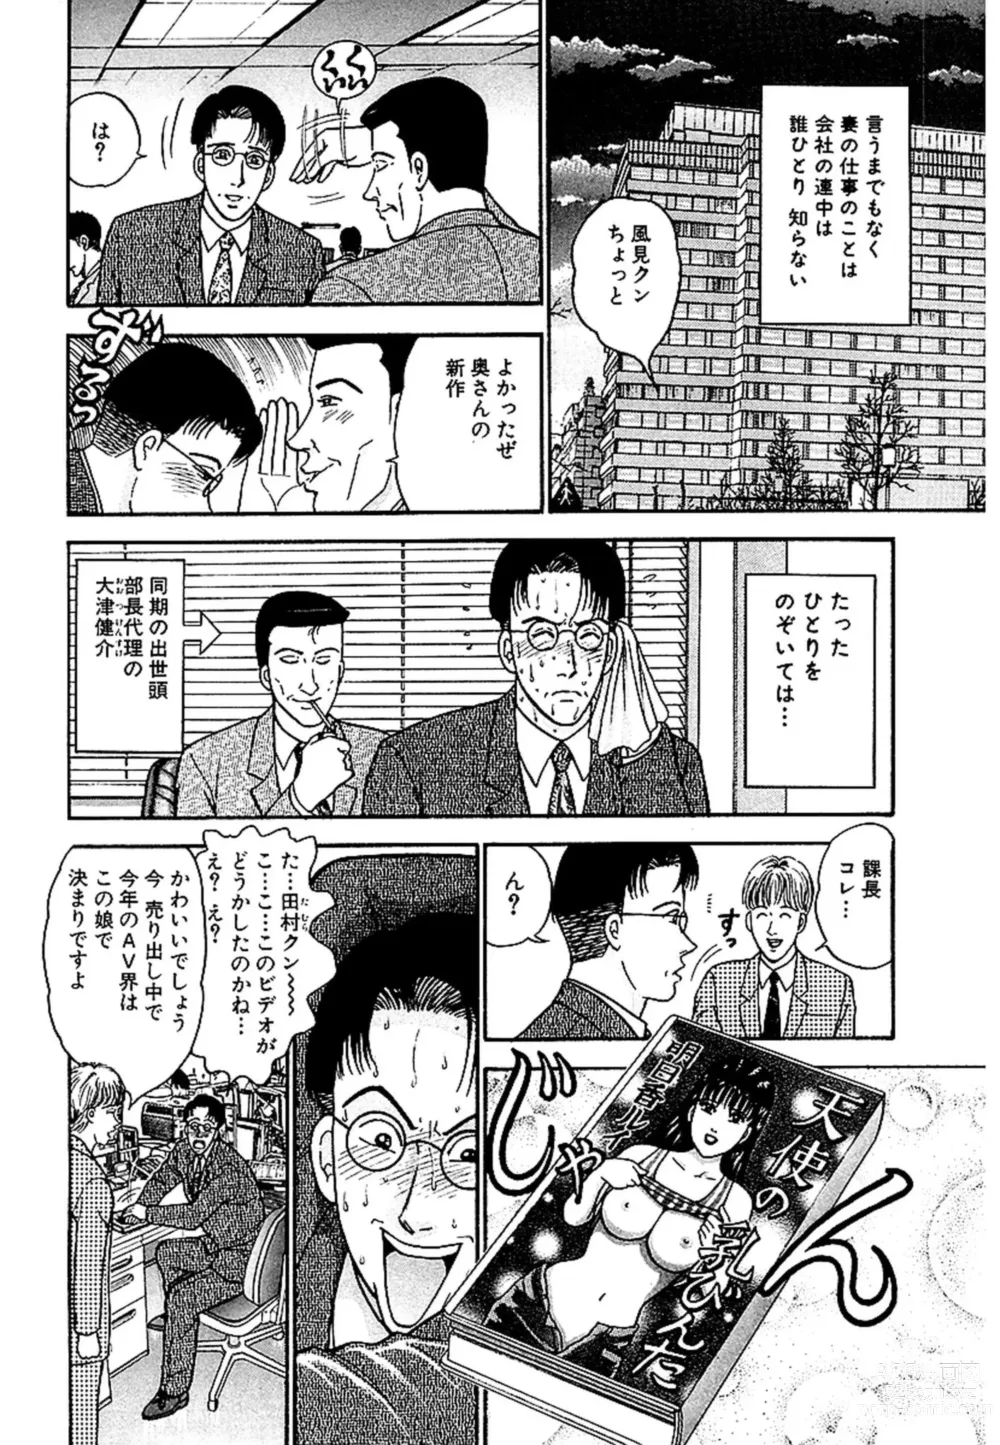 Page 5 of manga Sekkusuresu Shinsō-ban 1